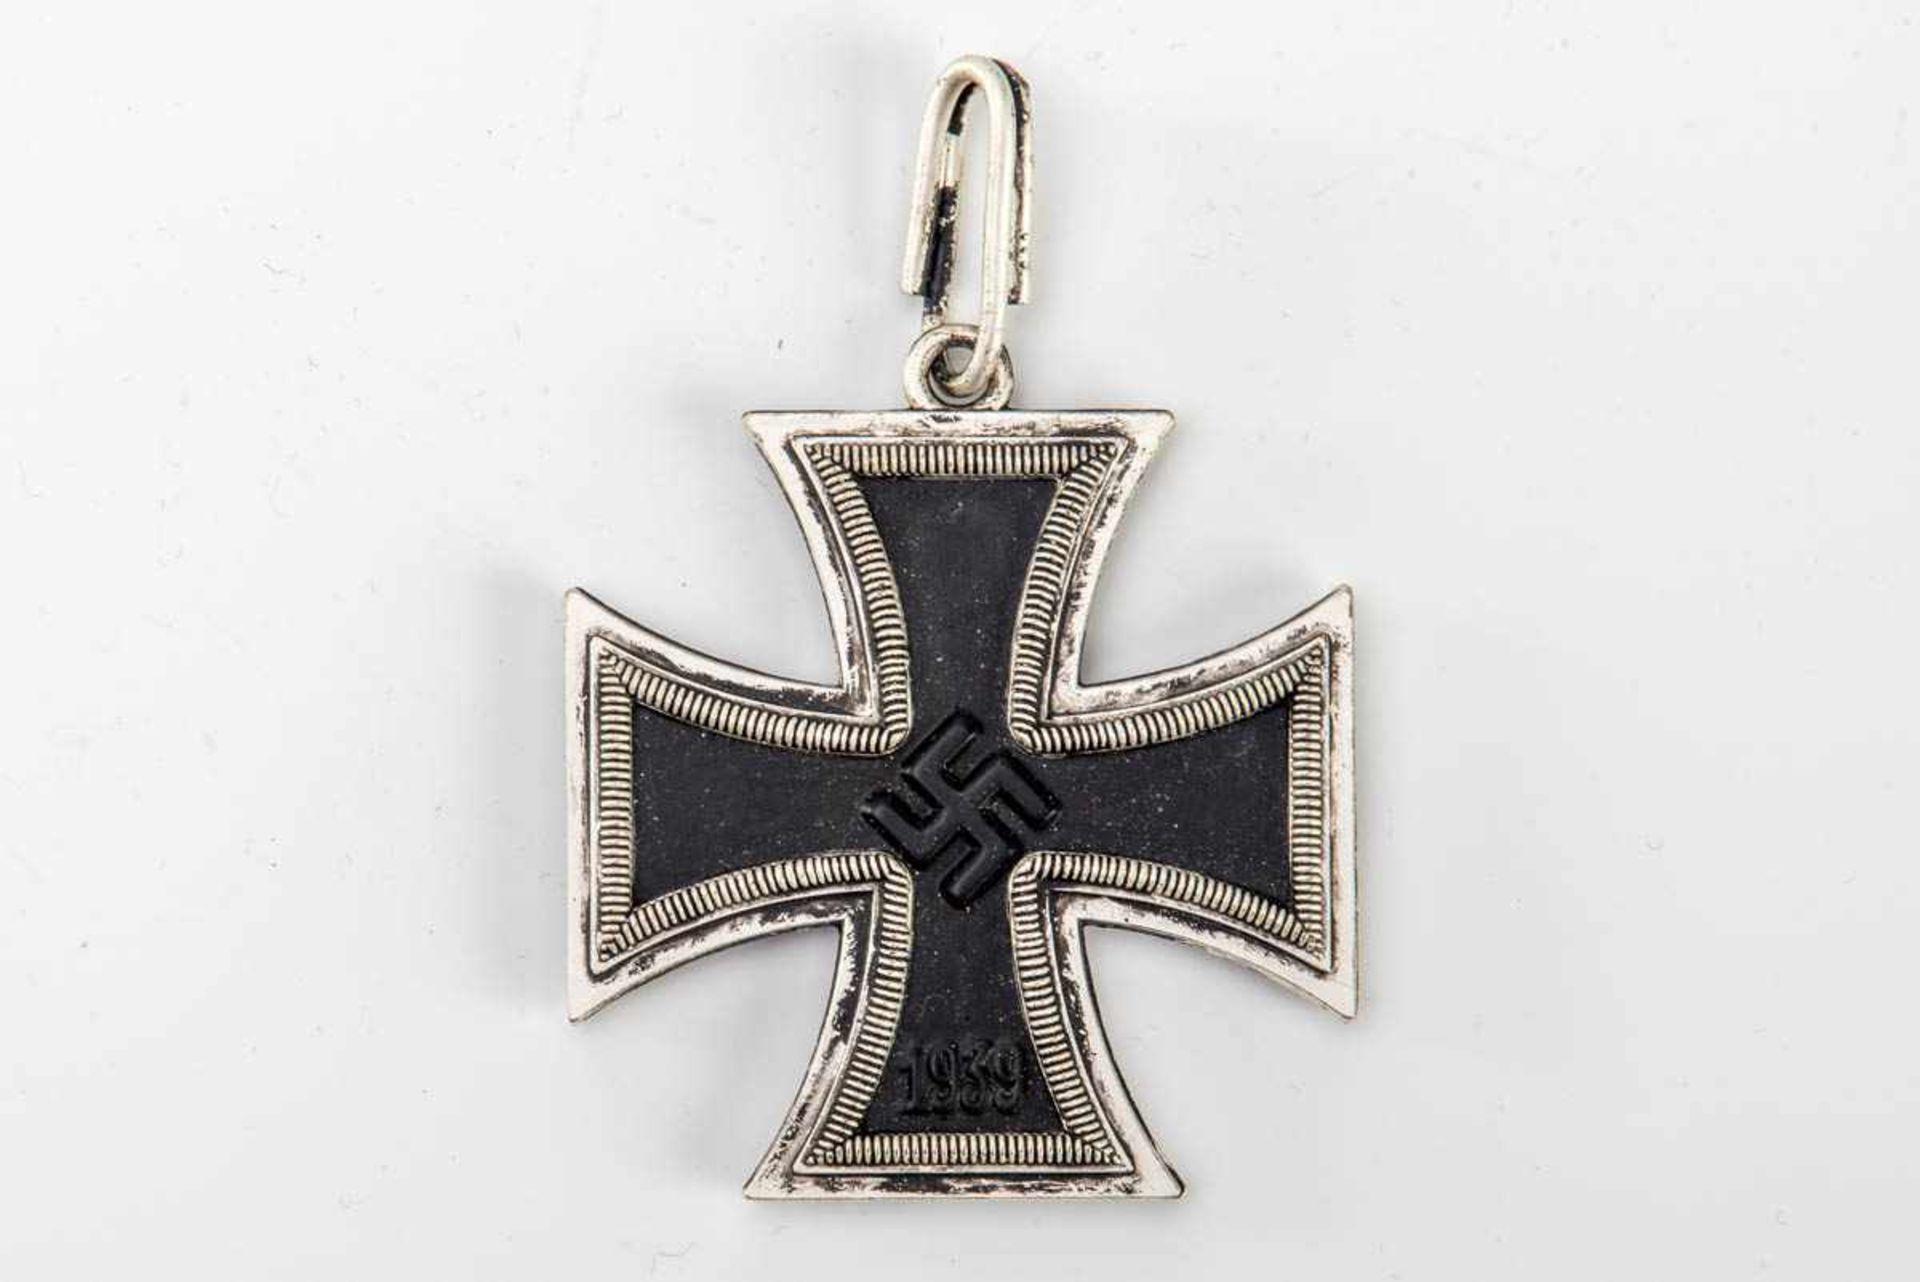 Ritterkreuz des Eisernen Kreuz 1939 Zweiteilige Zarge gepunzt 800 L/12. Der Kern aus Eisen (